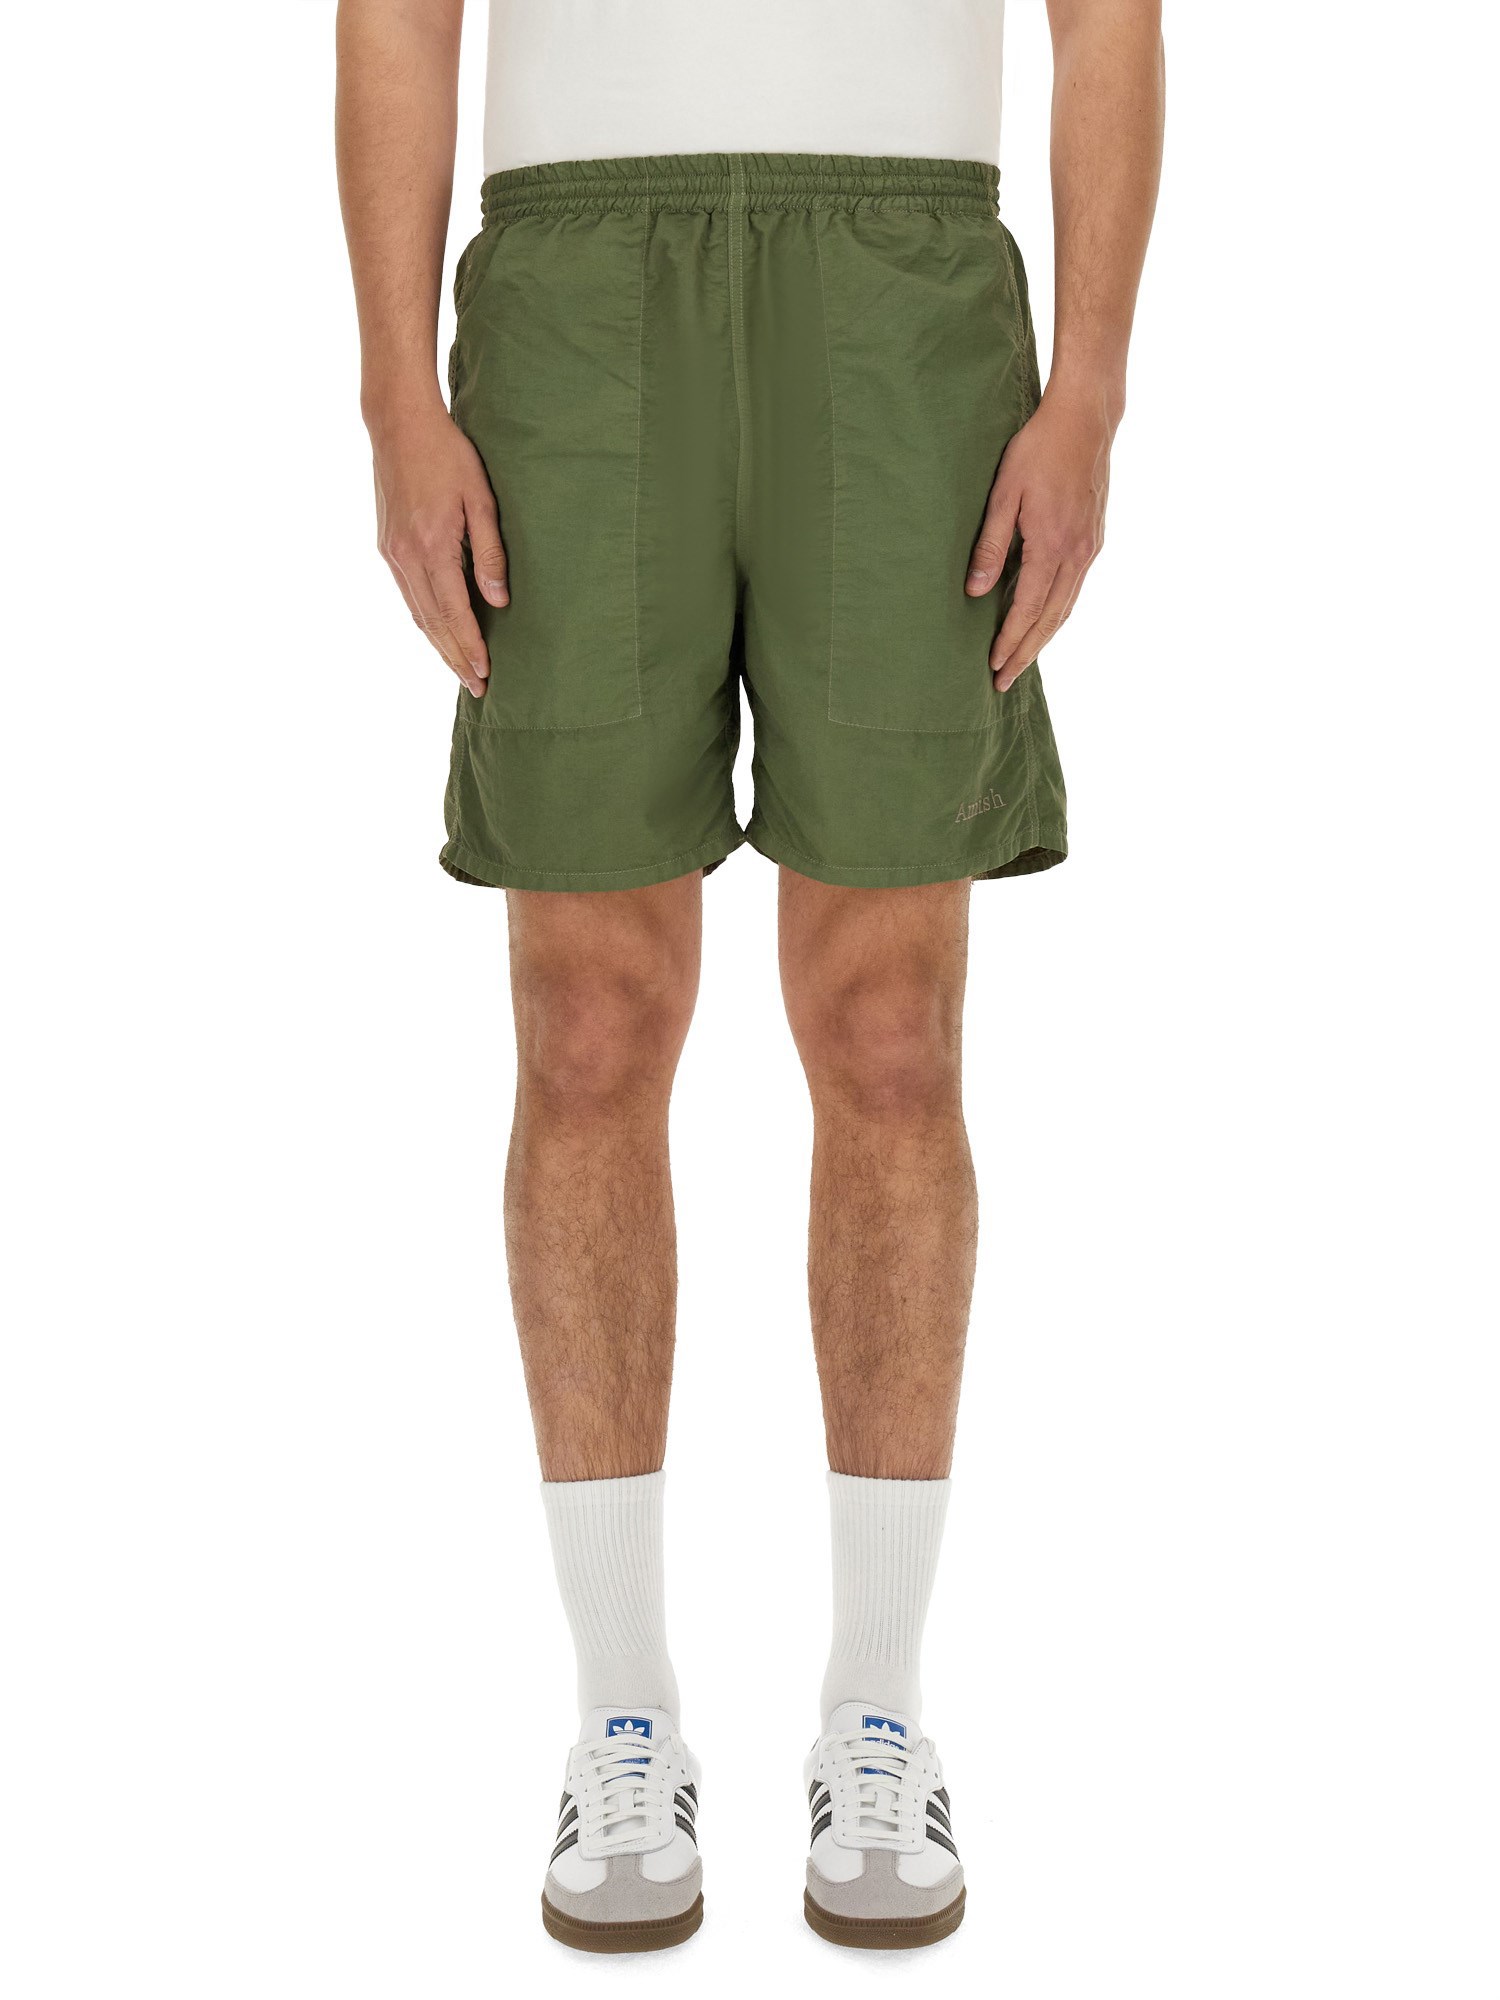 Amish amish nylon bermuda shorts